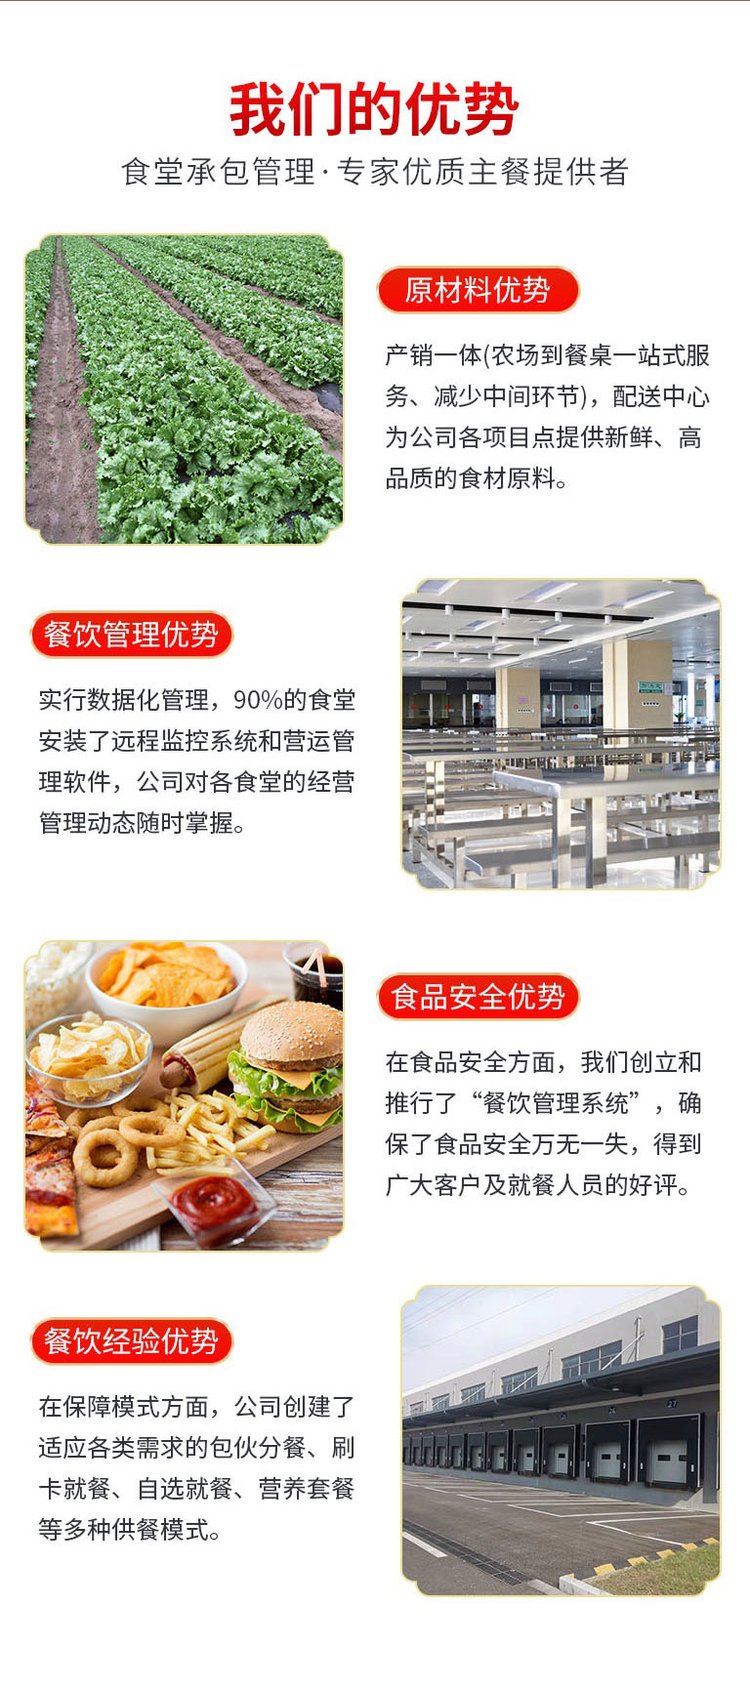 清远新鲜蔬菜批发食堂送菜服务公司